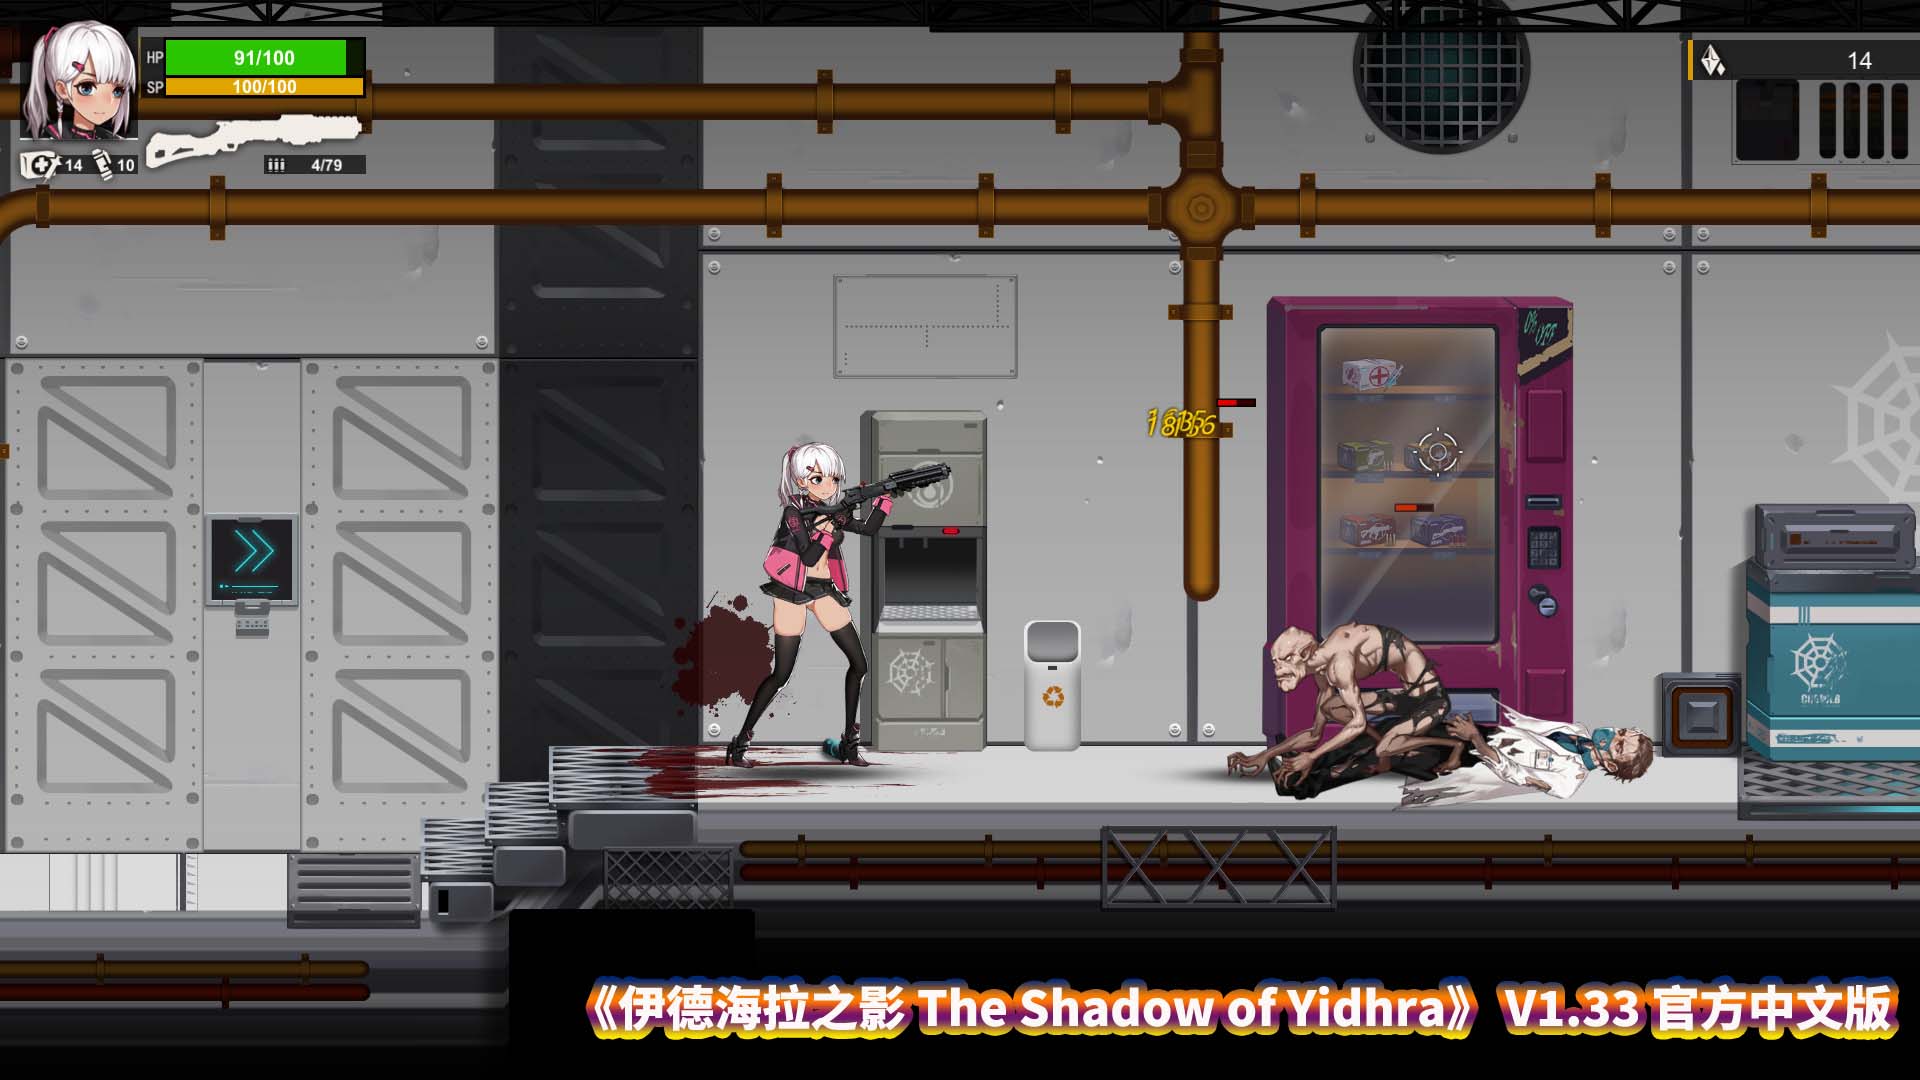 [爆款ACT全动态异种]伊德海拉之影 The Shadow of YidhraV1.33 官方中文版 [度盘下载]